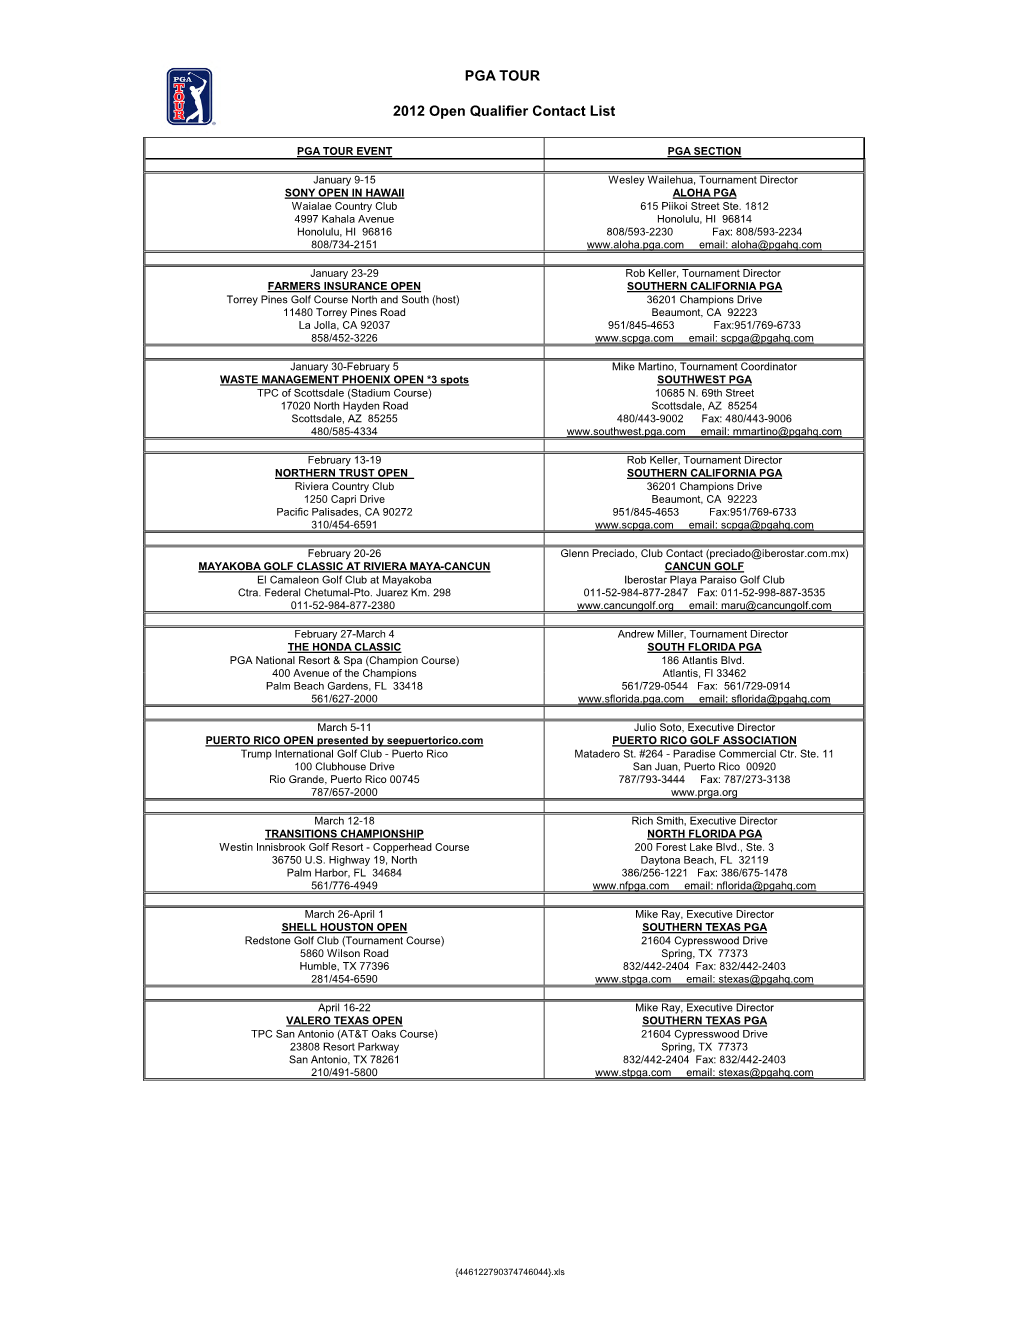 2012 Open Qualifier Contact List PGA TOUR